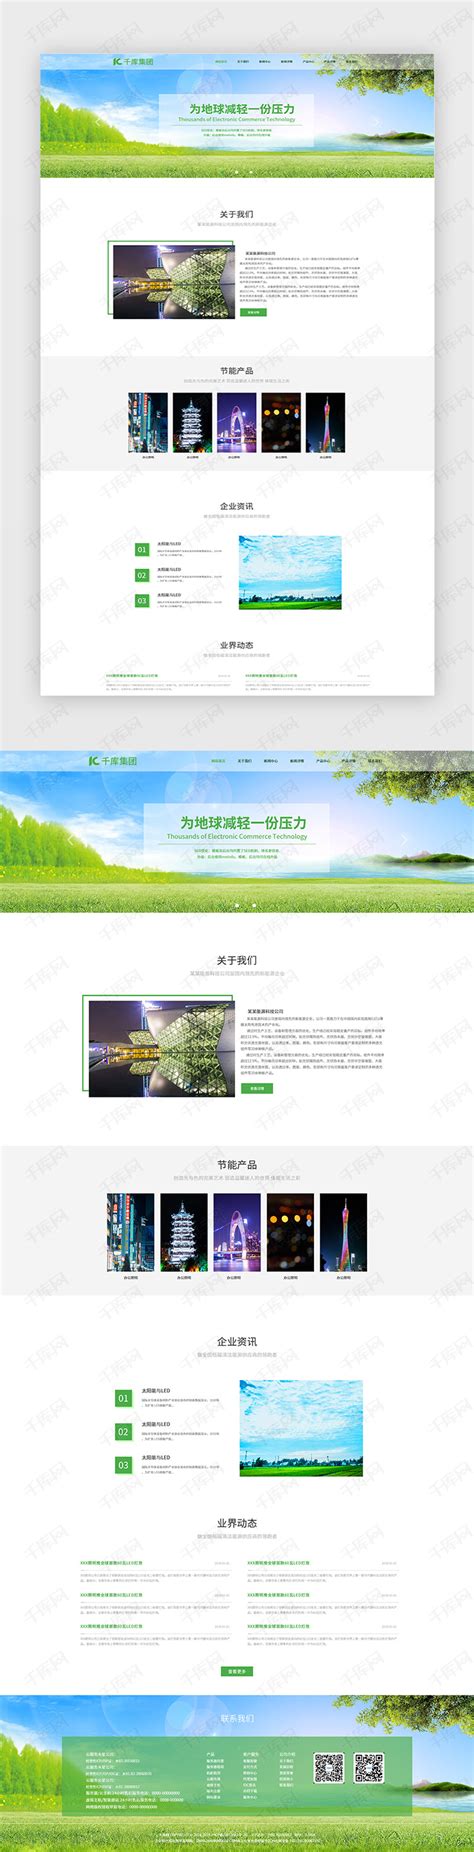 绿色环保科技企业网站首页ui界面设计素材-千库网